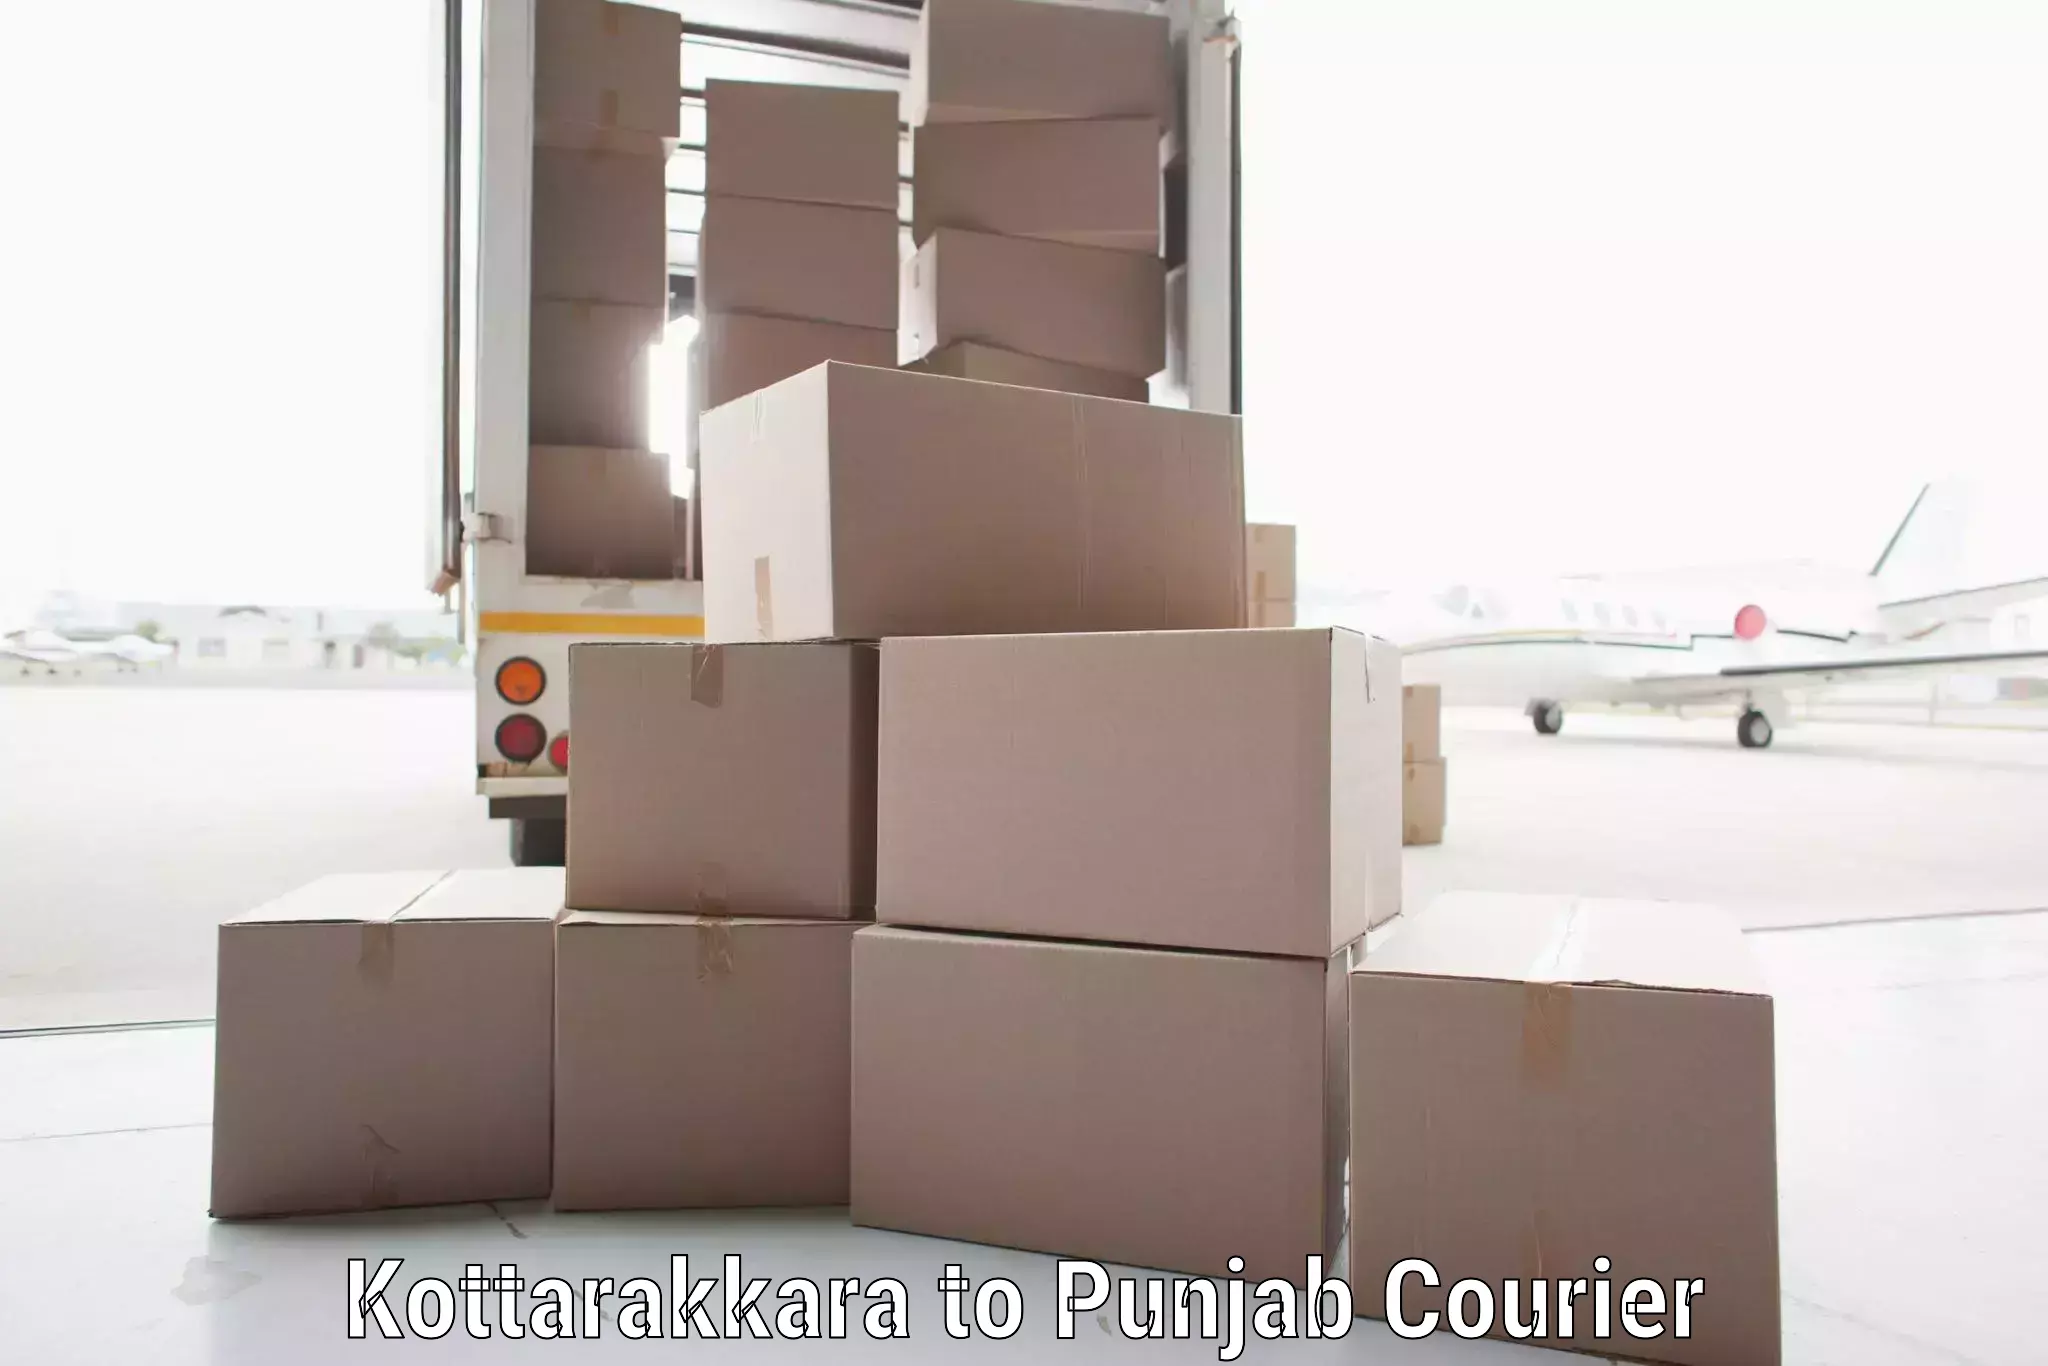 Business courier solutions Kottarakkara to Punjab